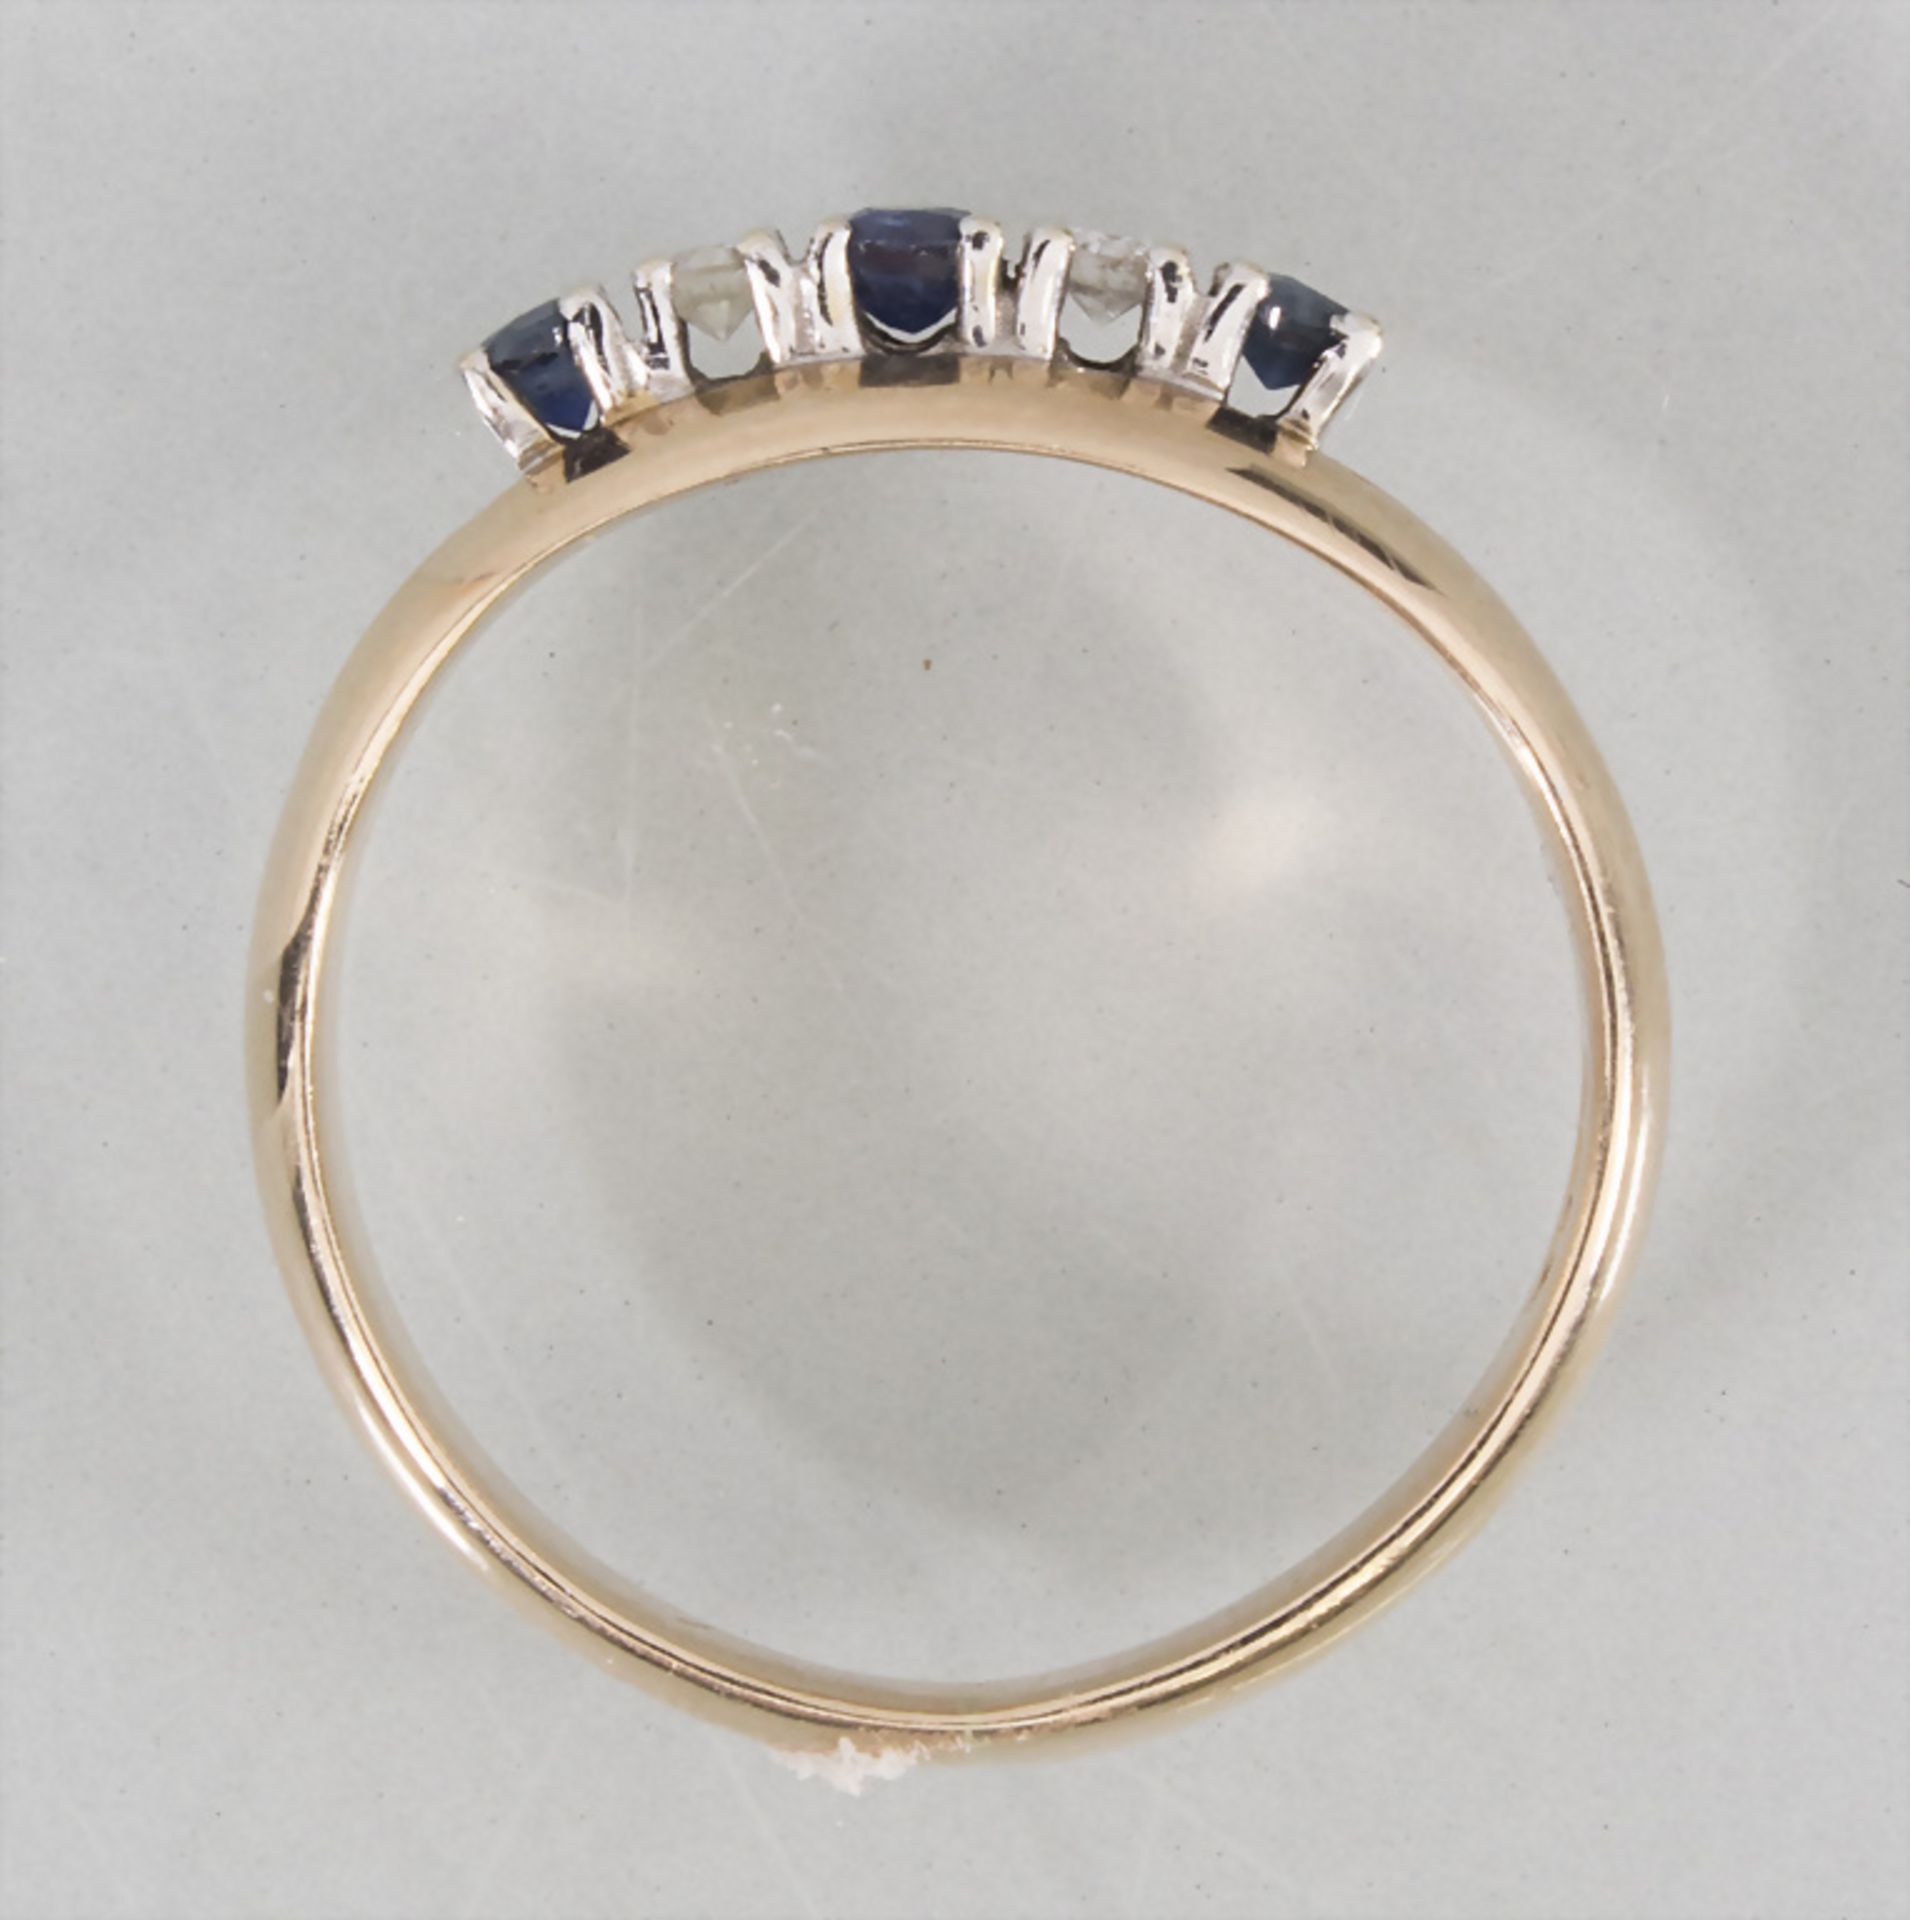 Damenring mit Diamant und Saphir / A ladies 14k gold ring with diamonds and sapphires - Bild 3 aus 4